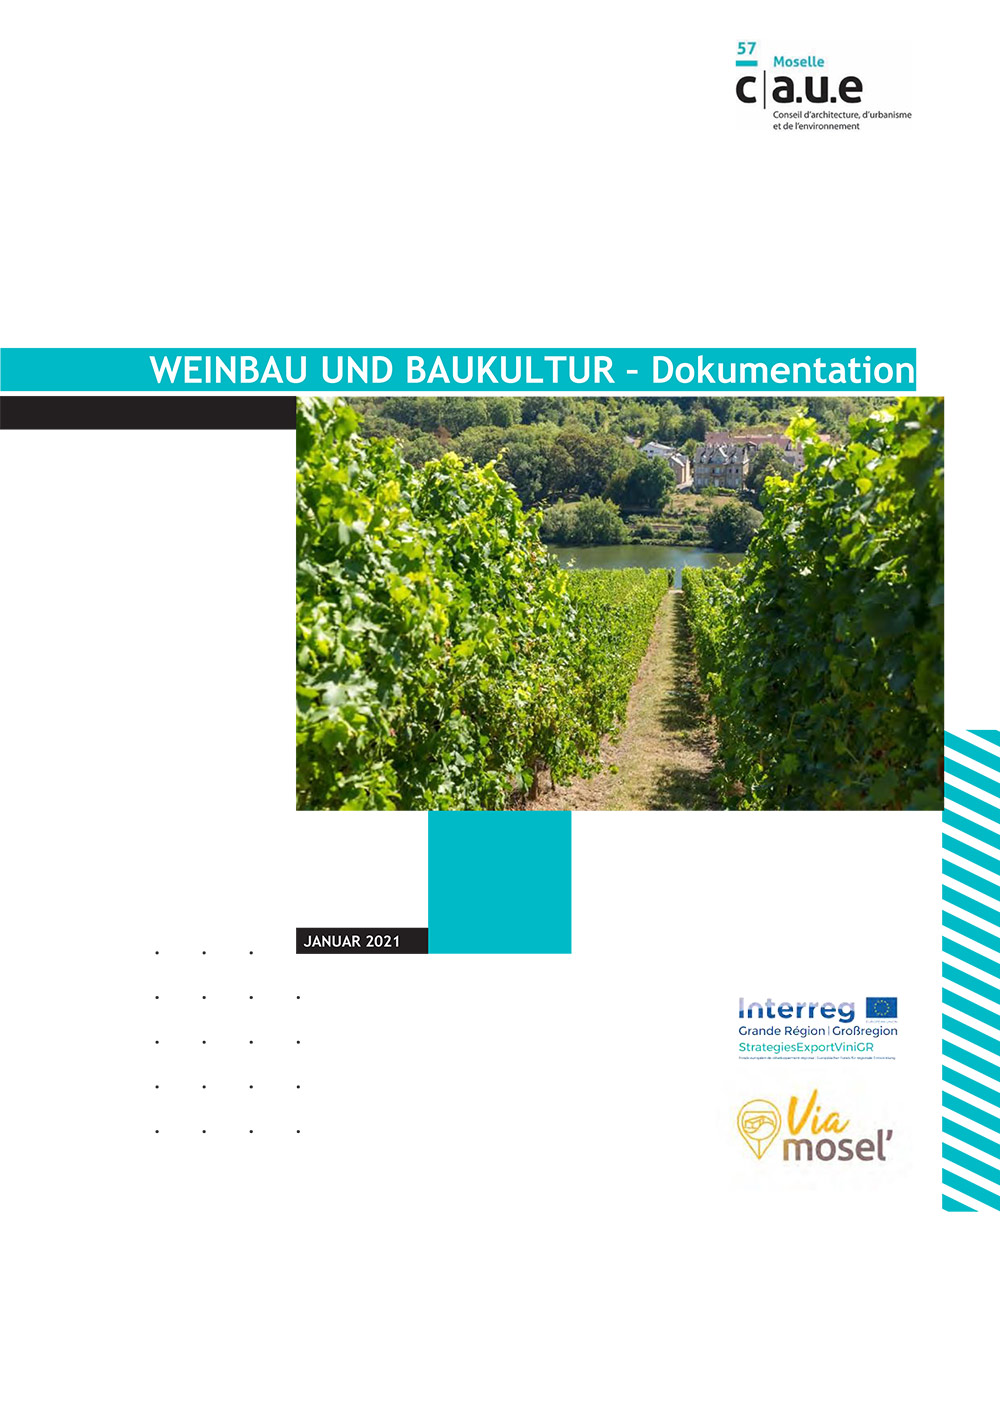 Weinbau_und_Baukultur_Dokumentation_Poster